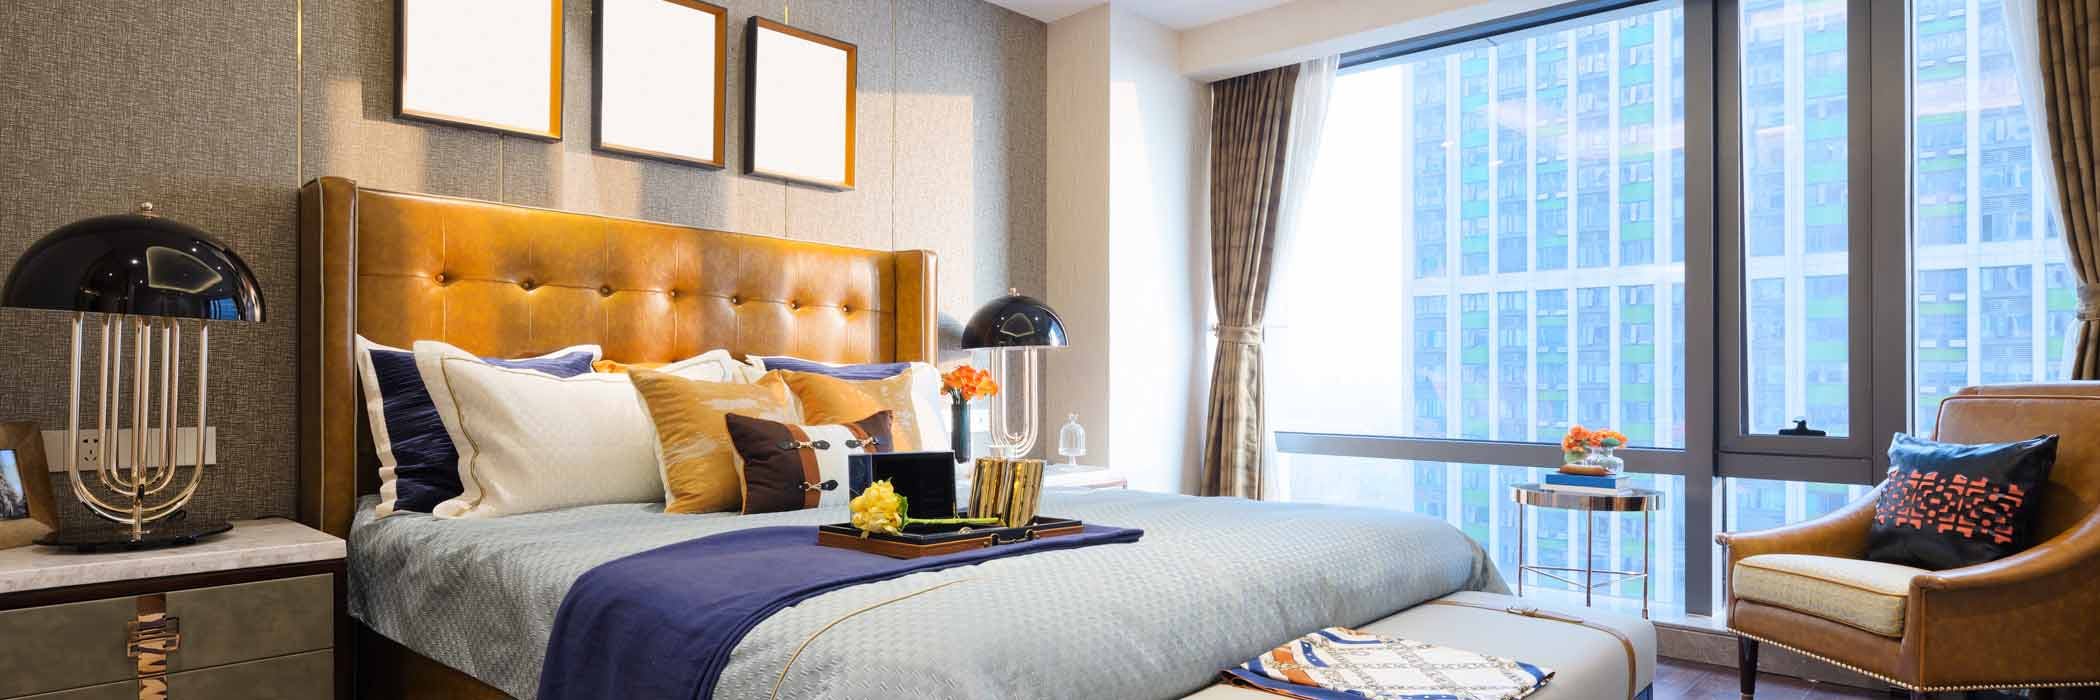 Last Minute Hotels - Luxury Hotel Room